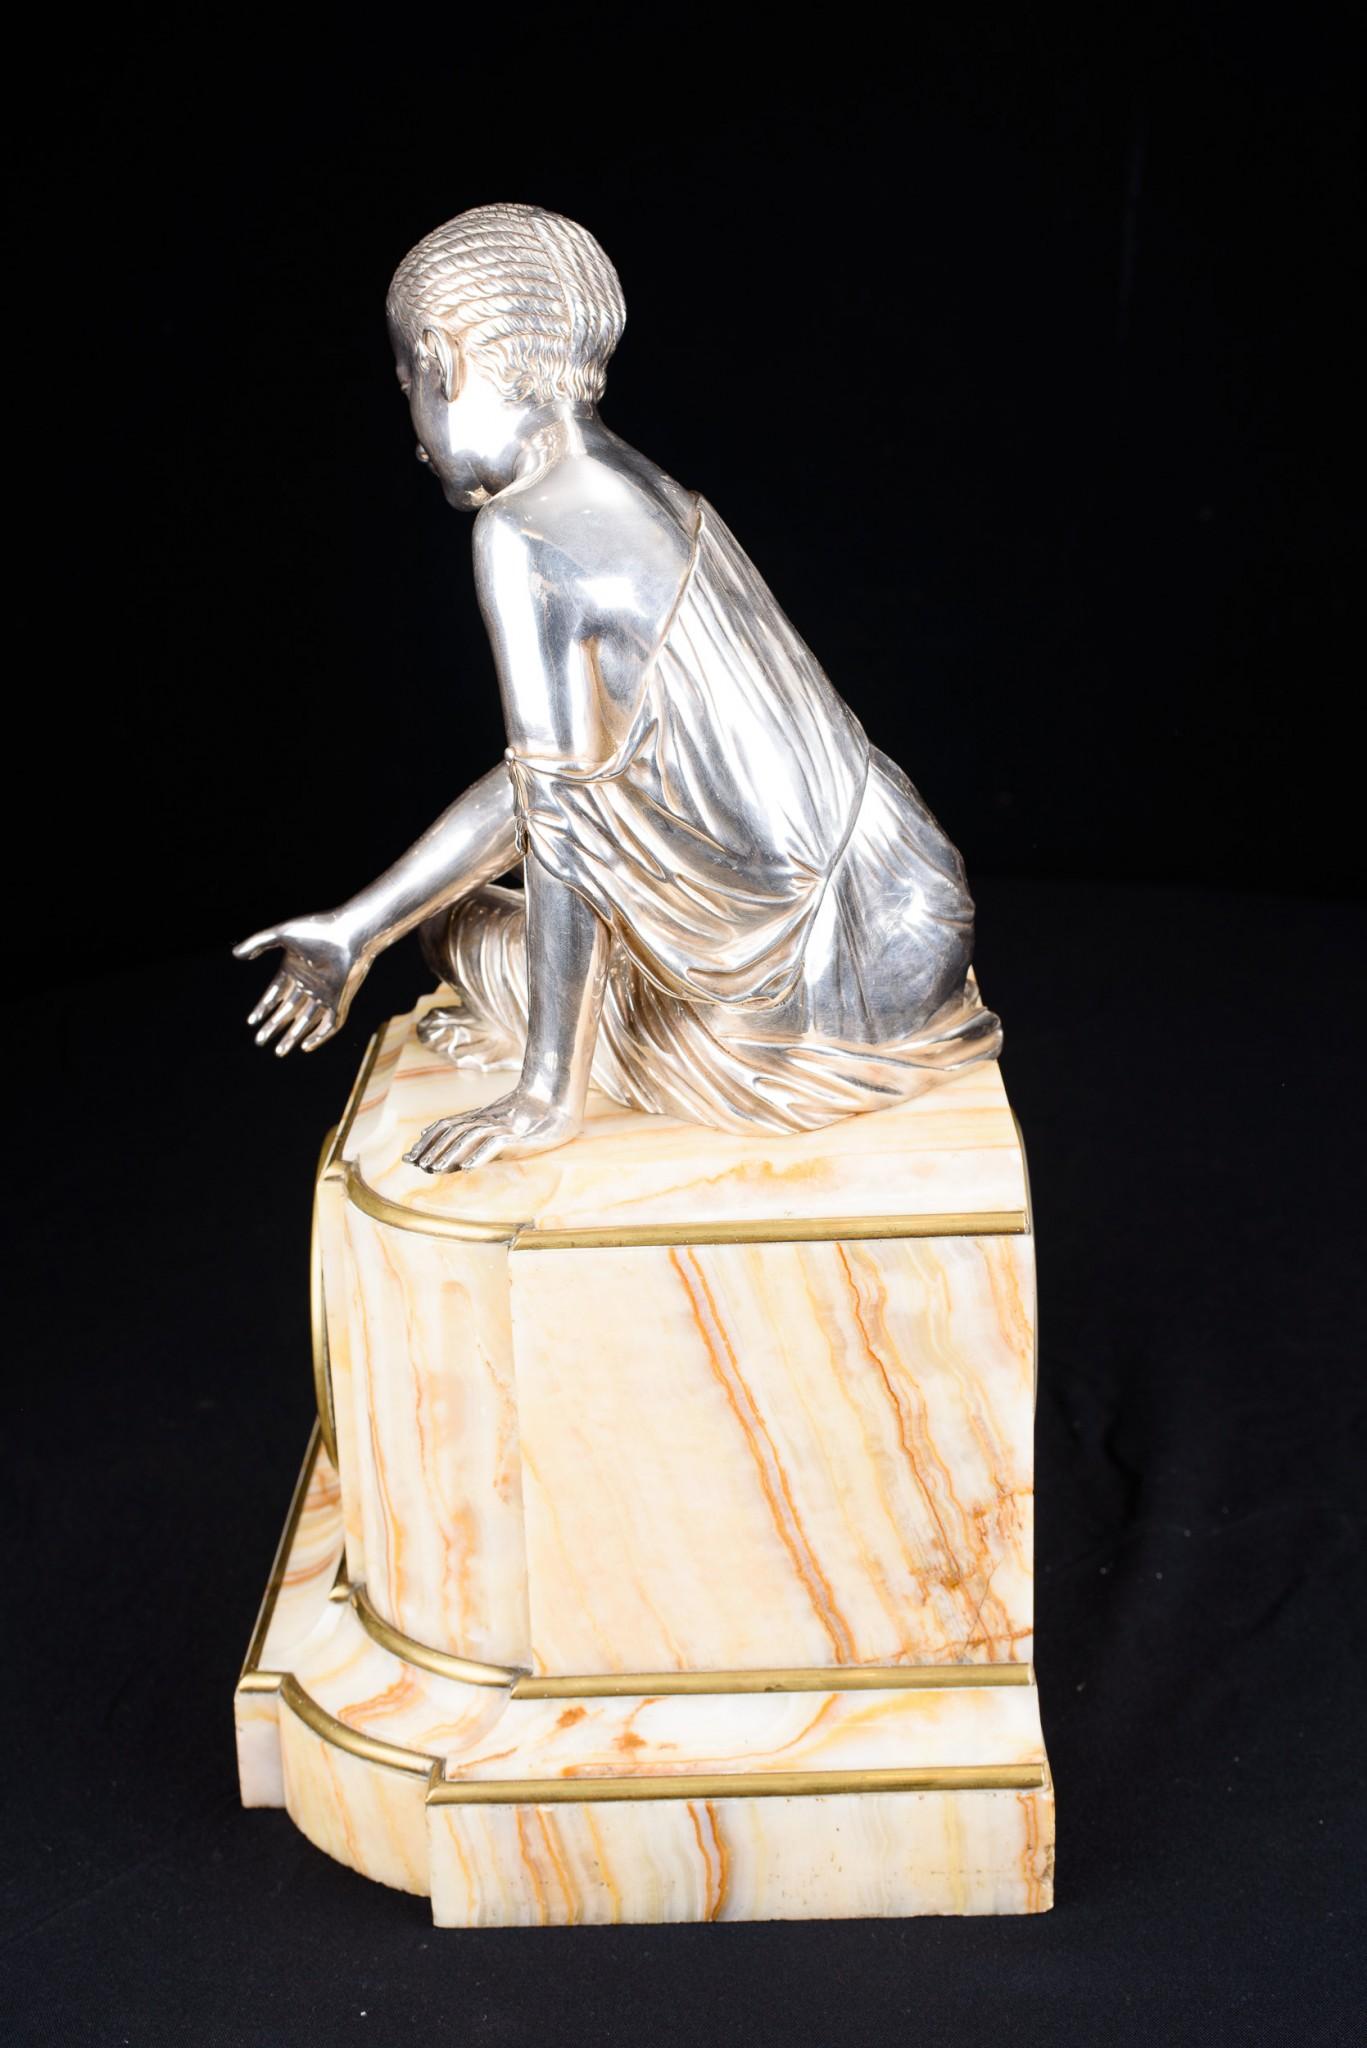 - Auffällige Manteluhr im französischen Empire-Stil - Onyxsockel mit bronzener, versilberter Frauenfigur auf der Oberseite - Wir datieren dieses außergewöhnliche Zeitstück auf ca. 1920.